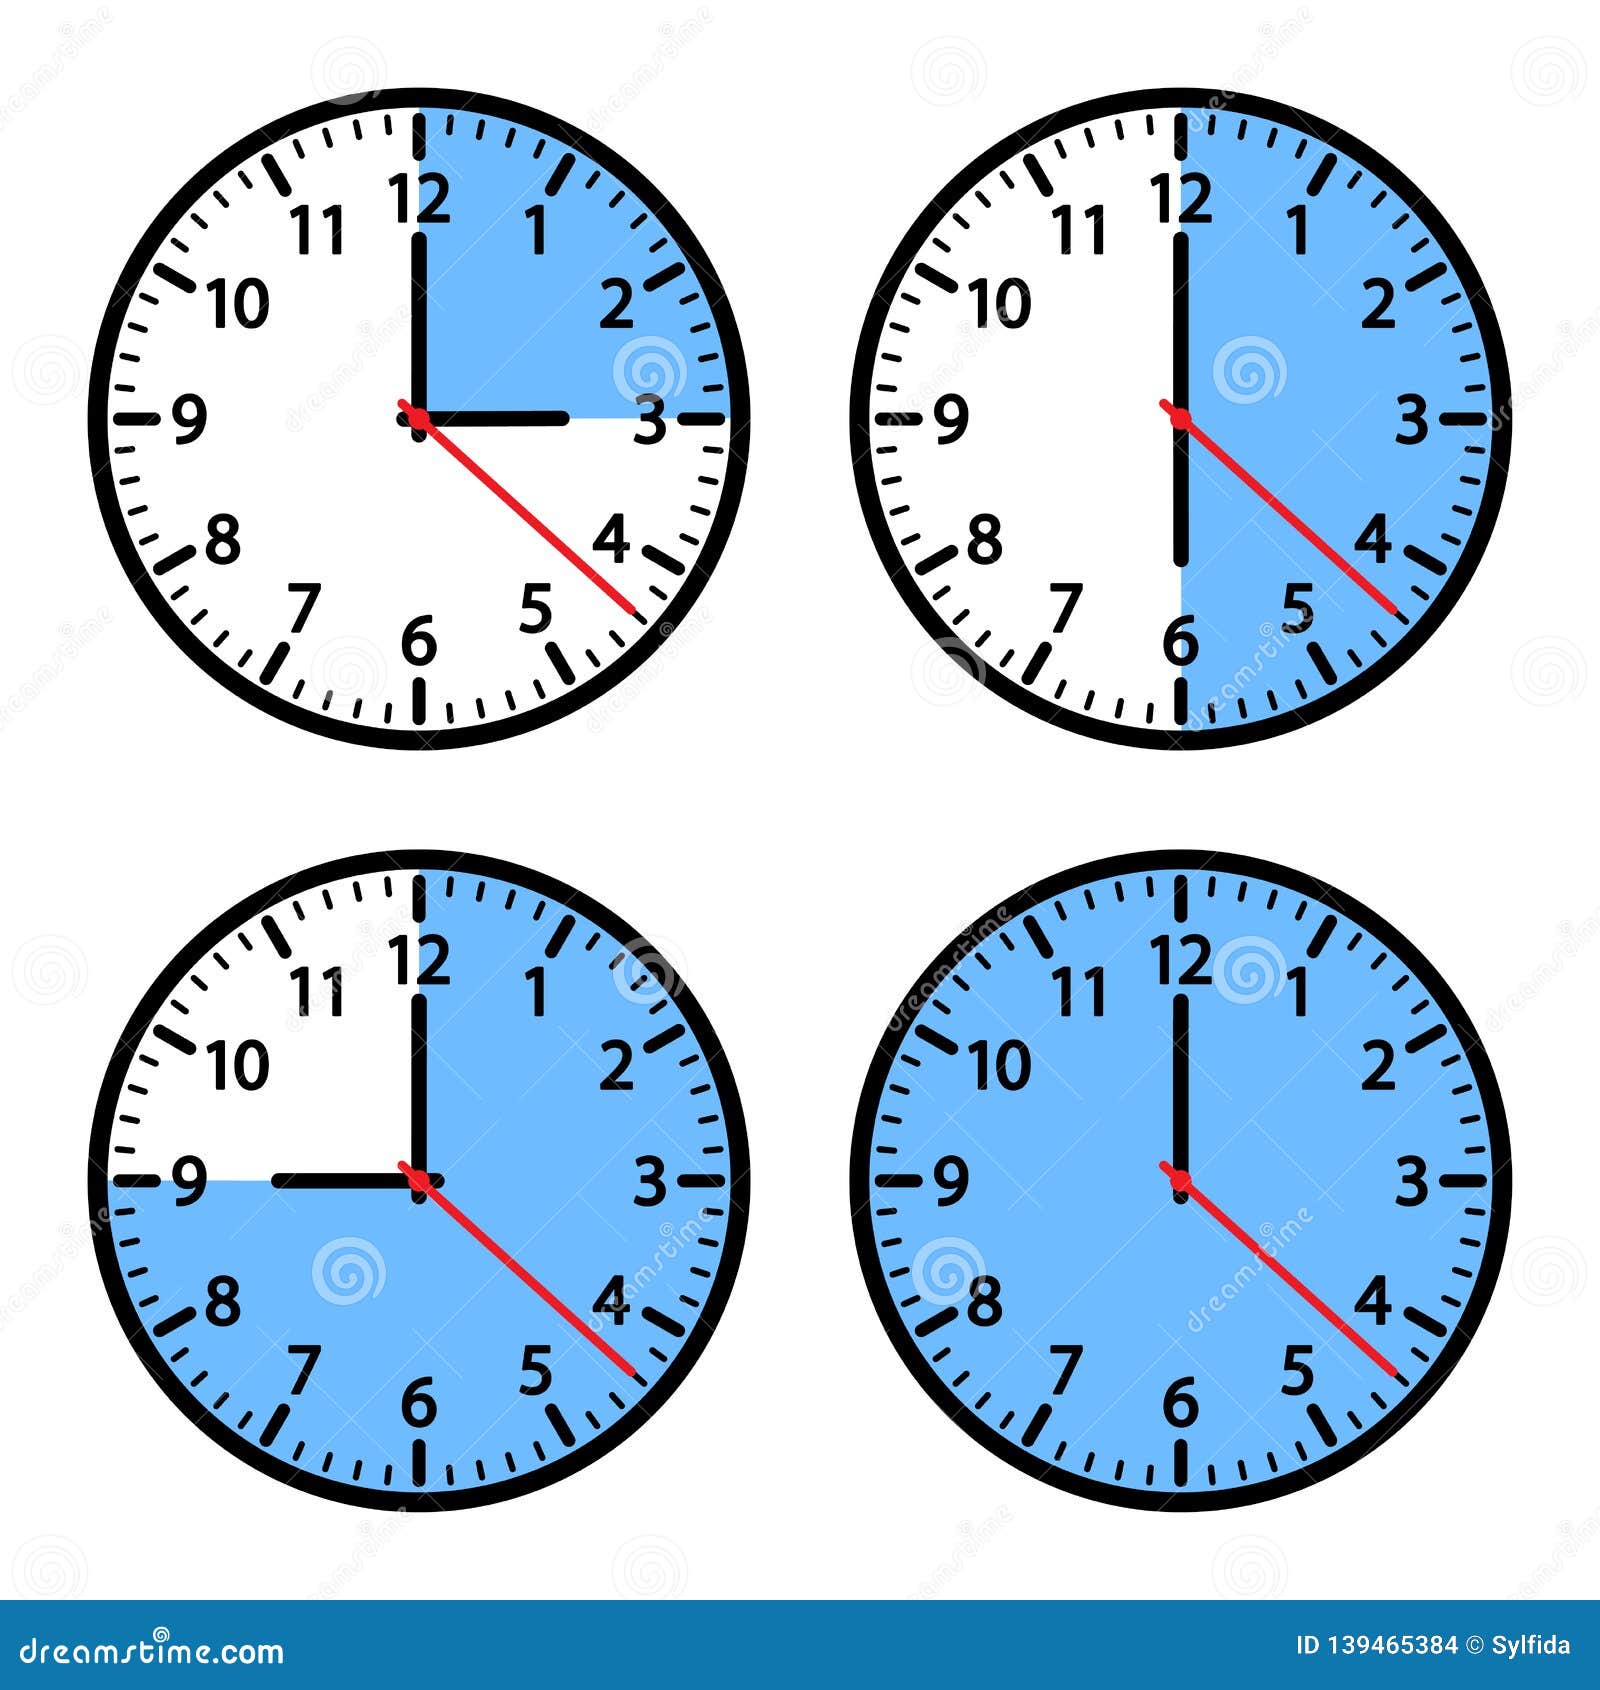 Часы показывающие разное время. Часы показывают Разное время. Циферблаты с разным временем. Часы с разным временем пиктограммы. Одинаковые иконки с разным временем.